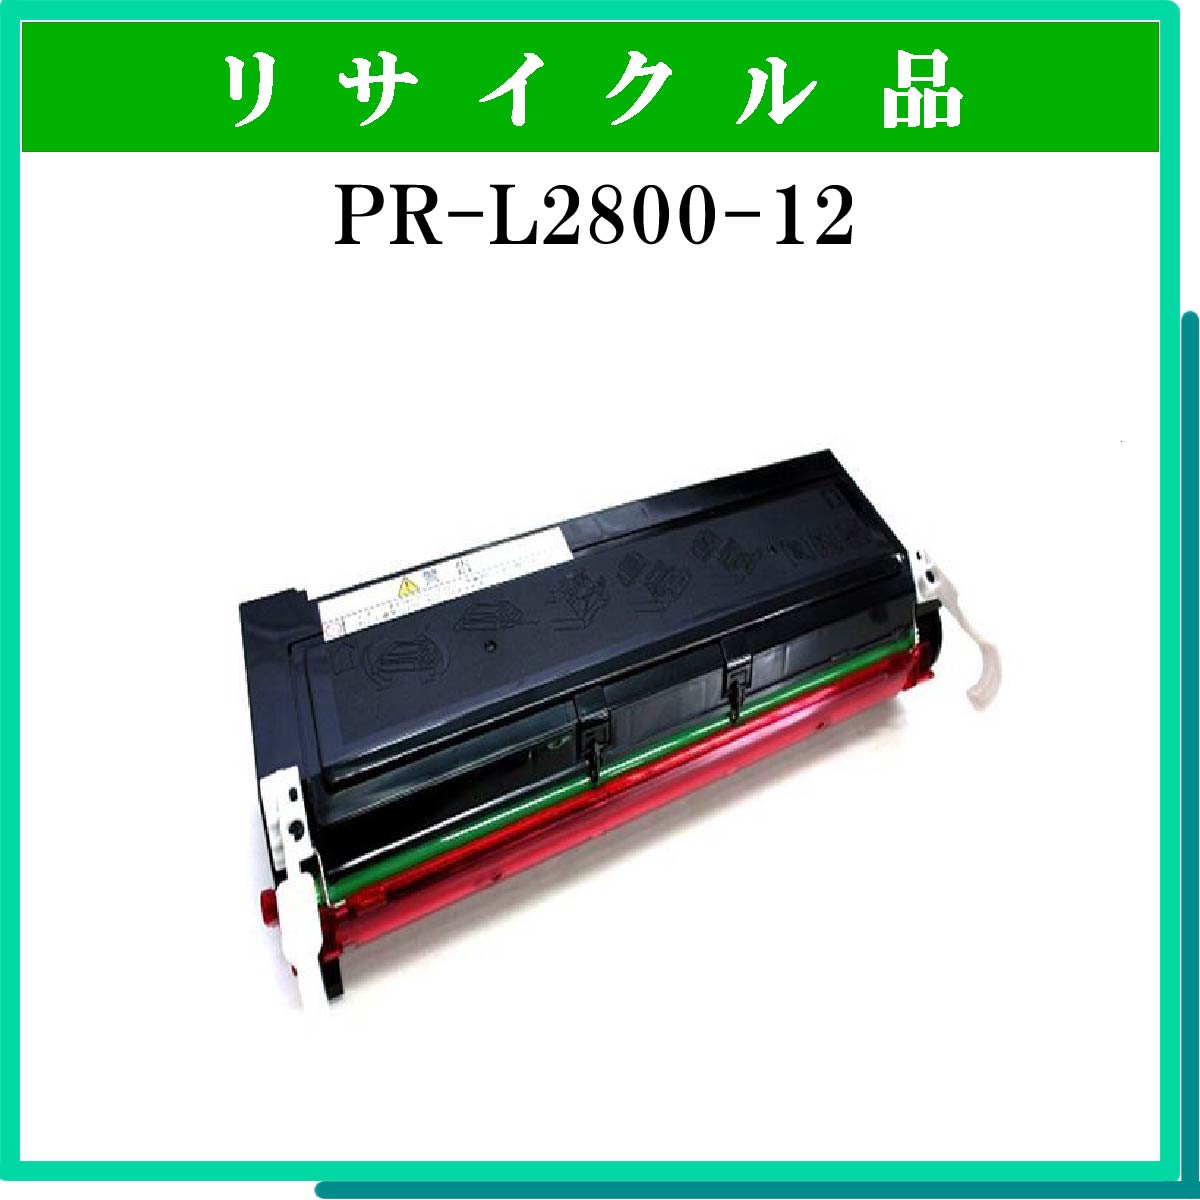 PR-L2800-12